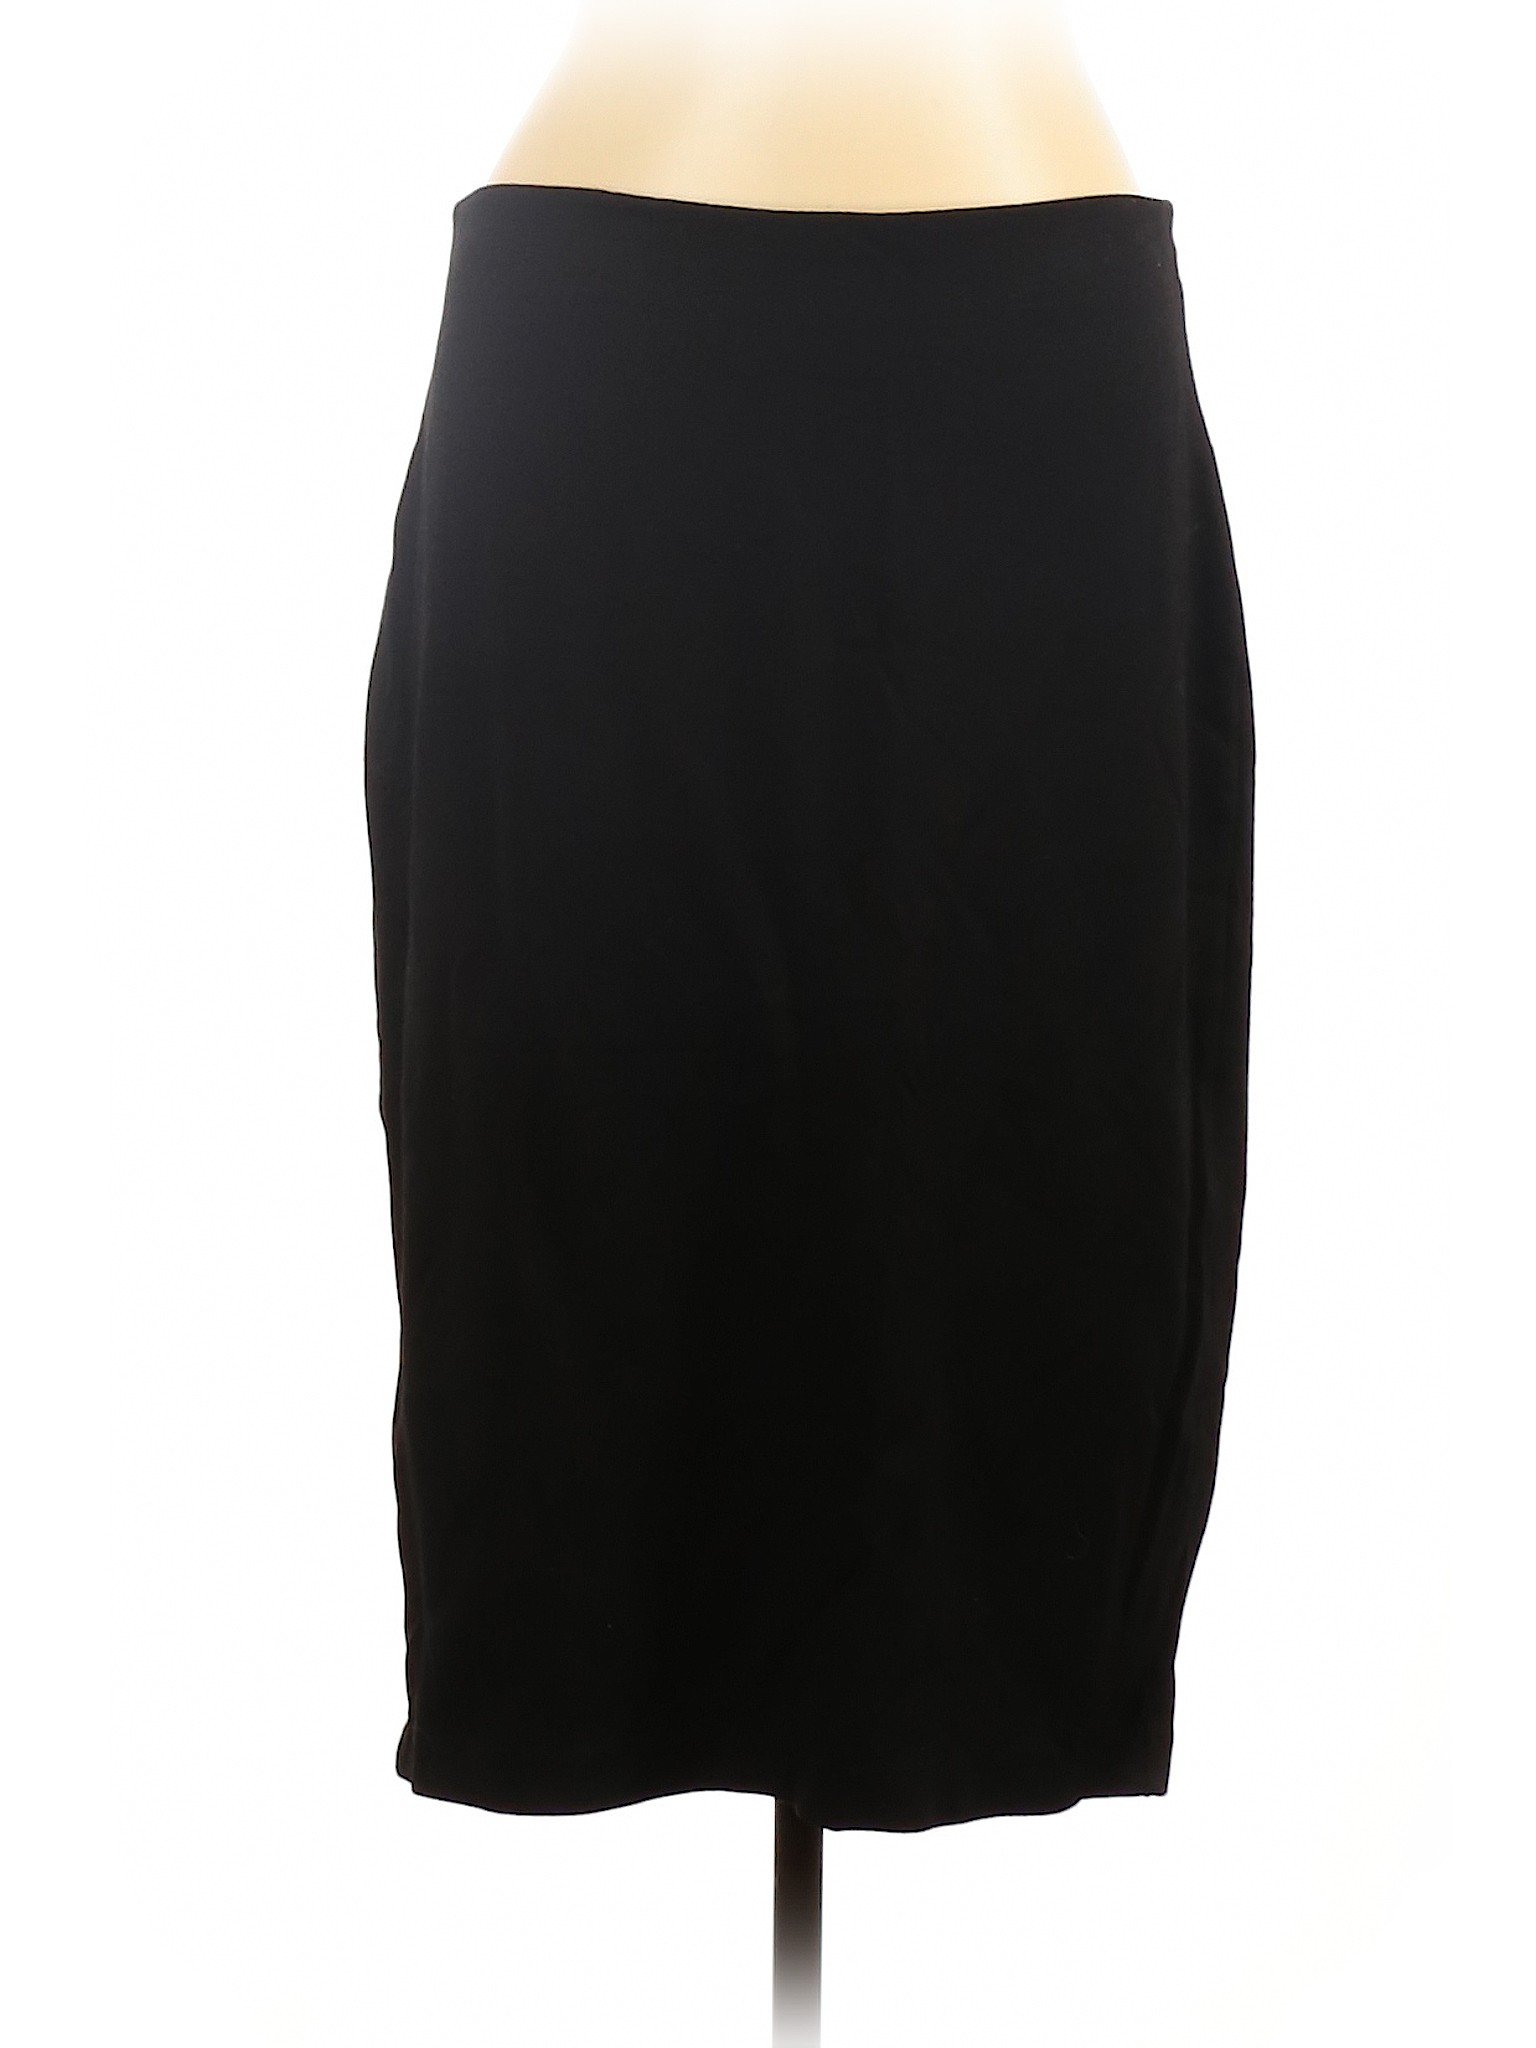 H&M Women Black Casual Skirt L | eBay